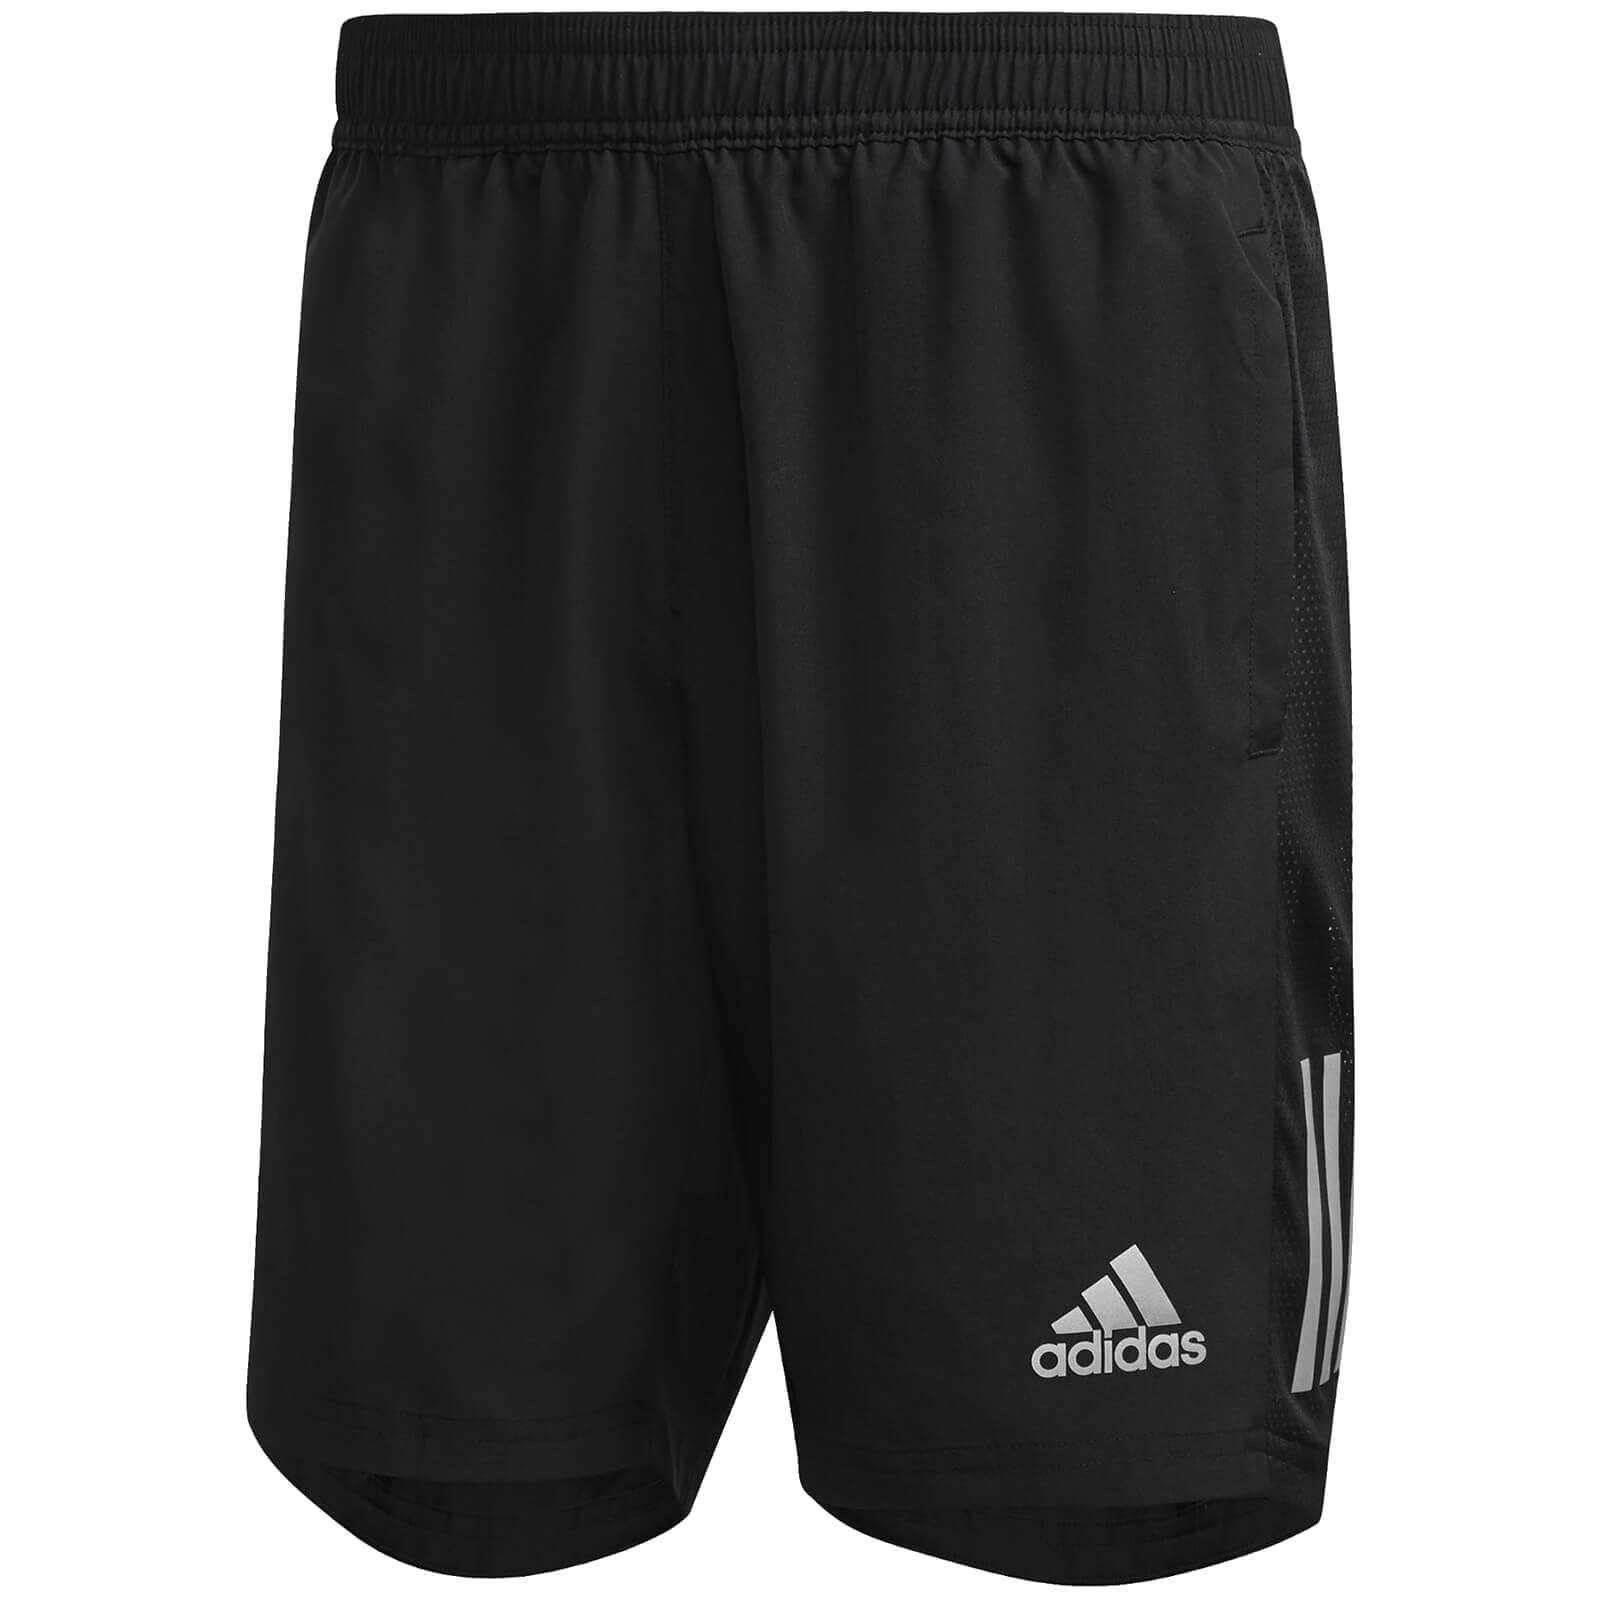 adidas Own The Run 7  Shorts - Black - L